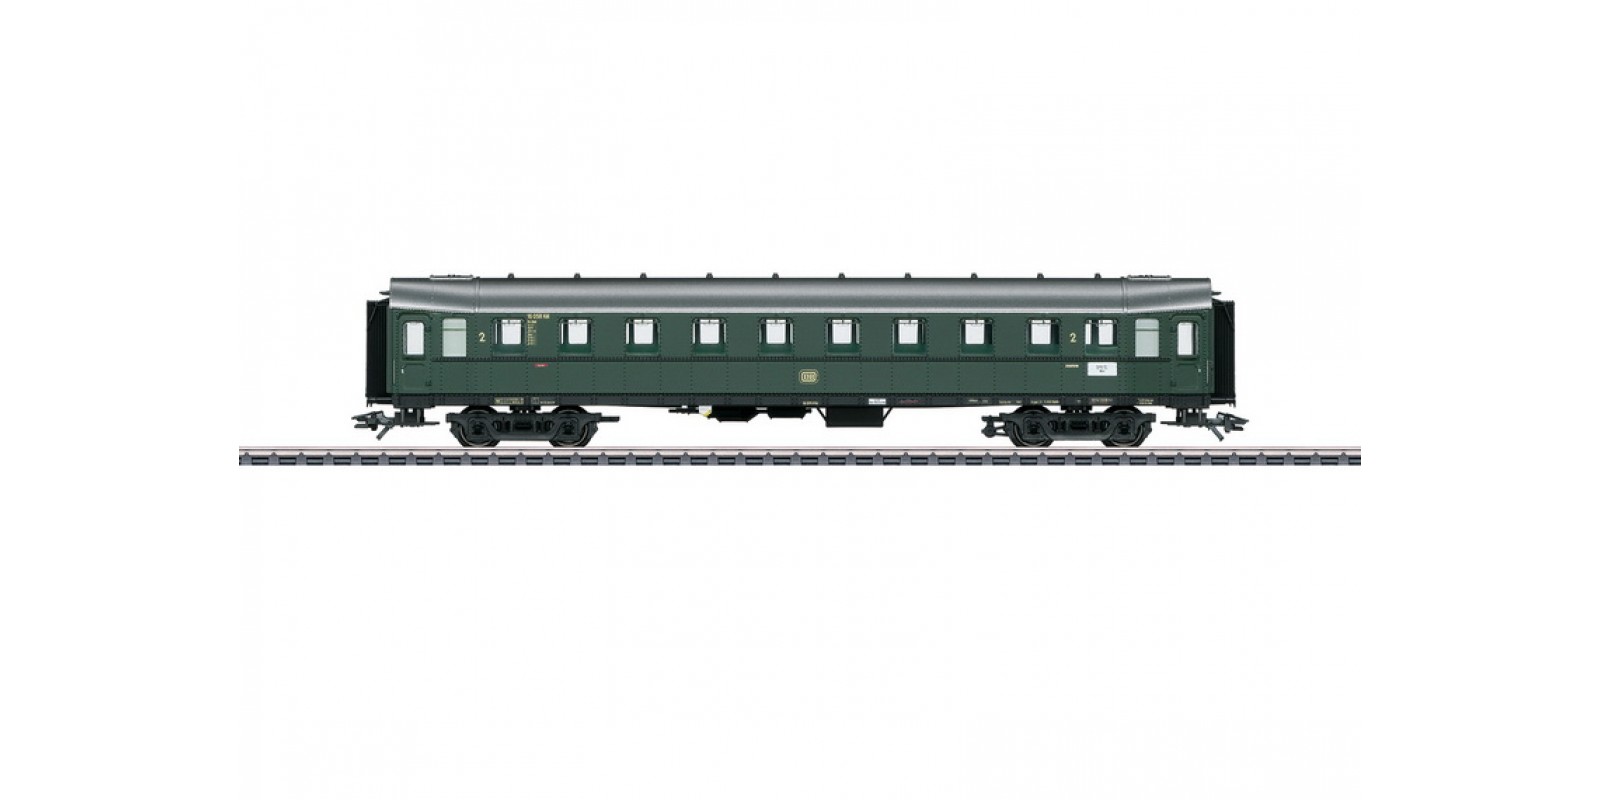 42255 "Hecht" / "Pike" Express Train Passenger Car, 2nd Class 